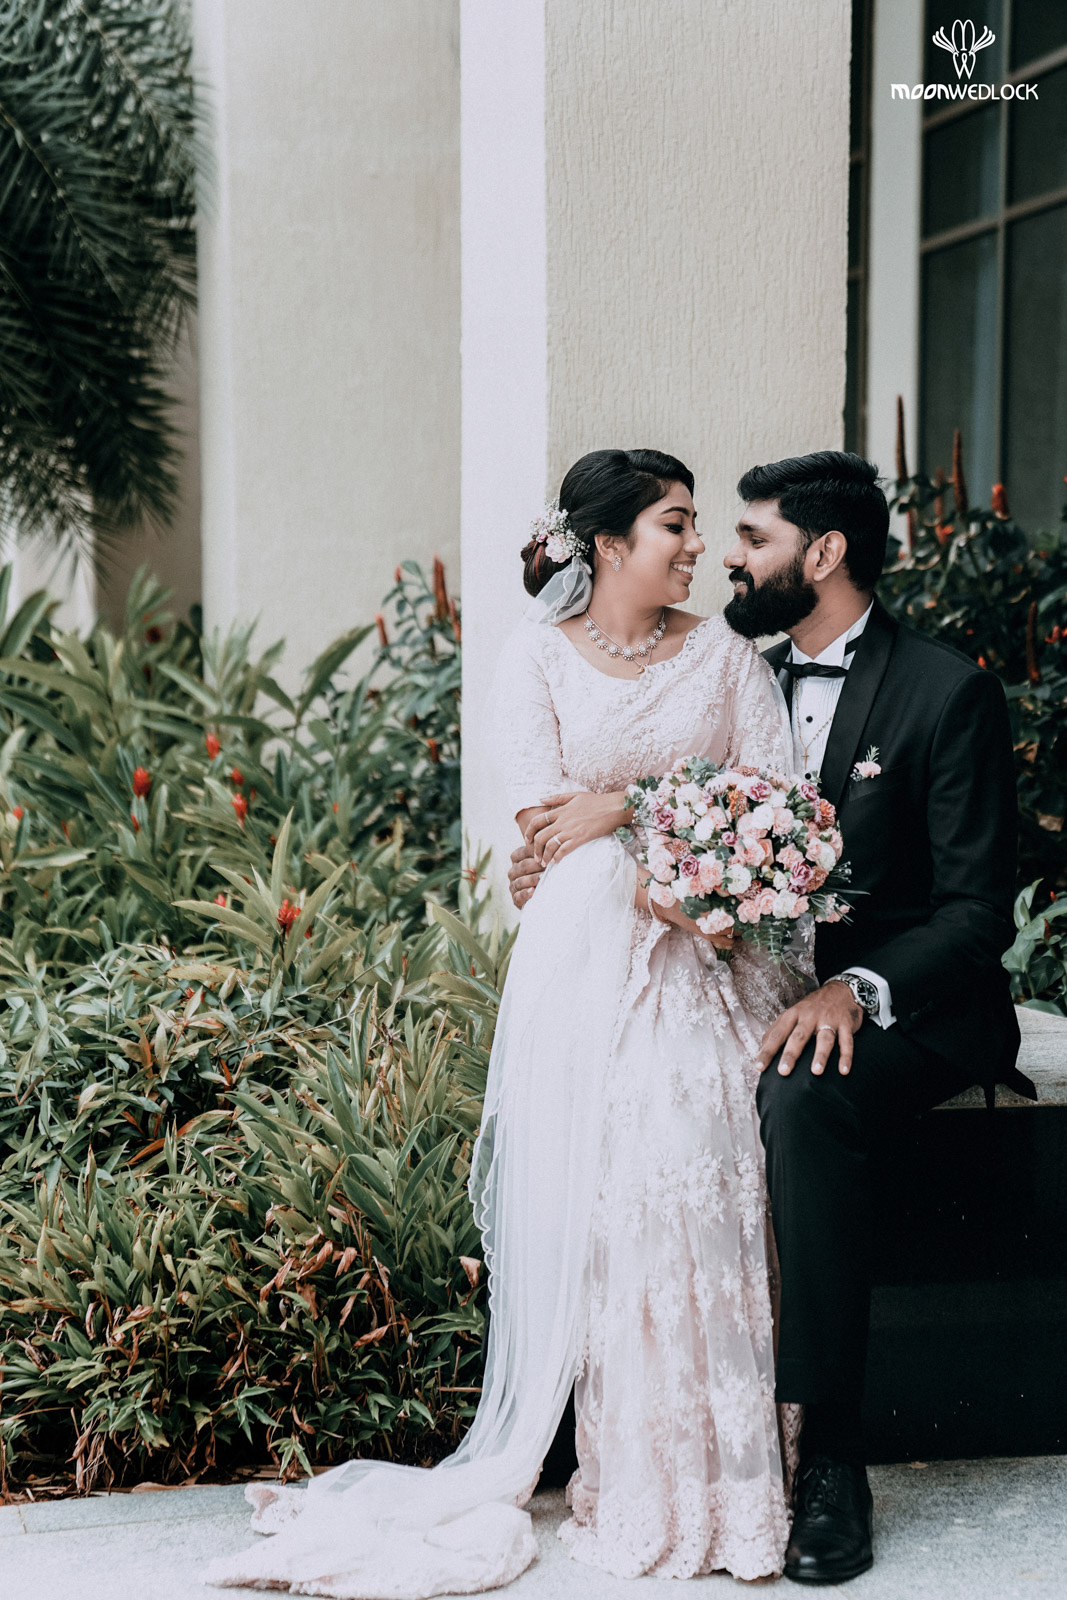 bangalore-christian-wedding-photography-moonwedlock (44)